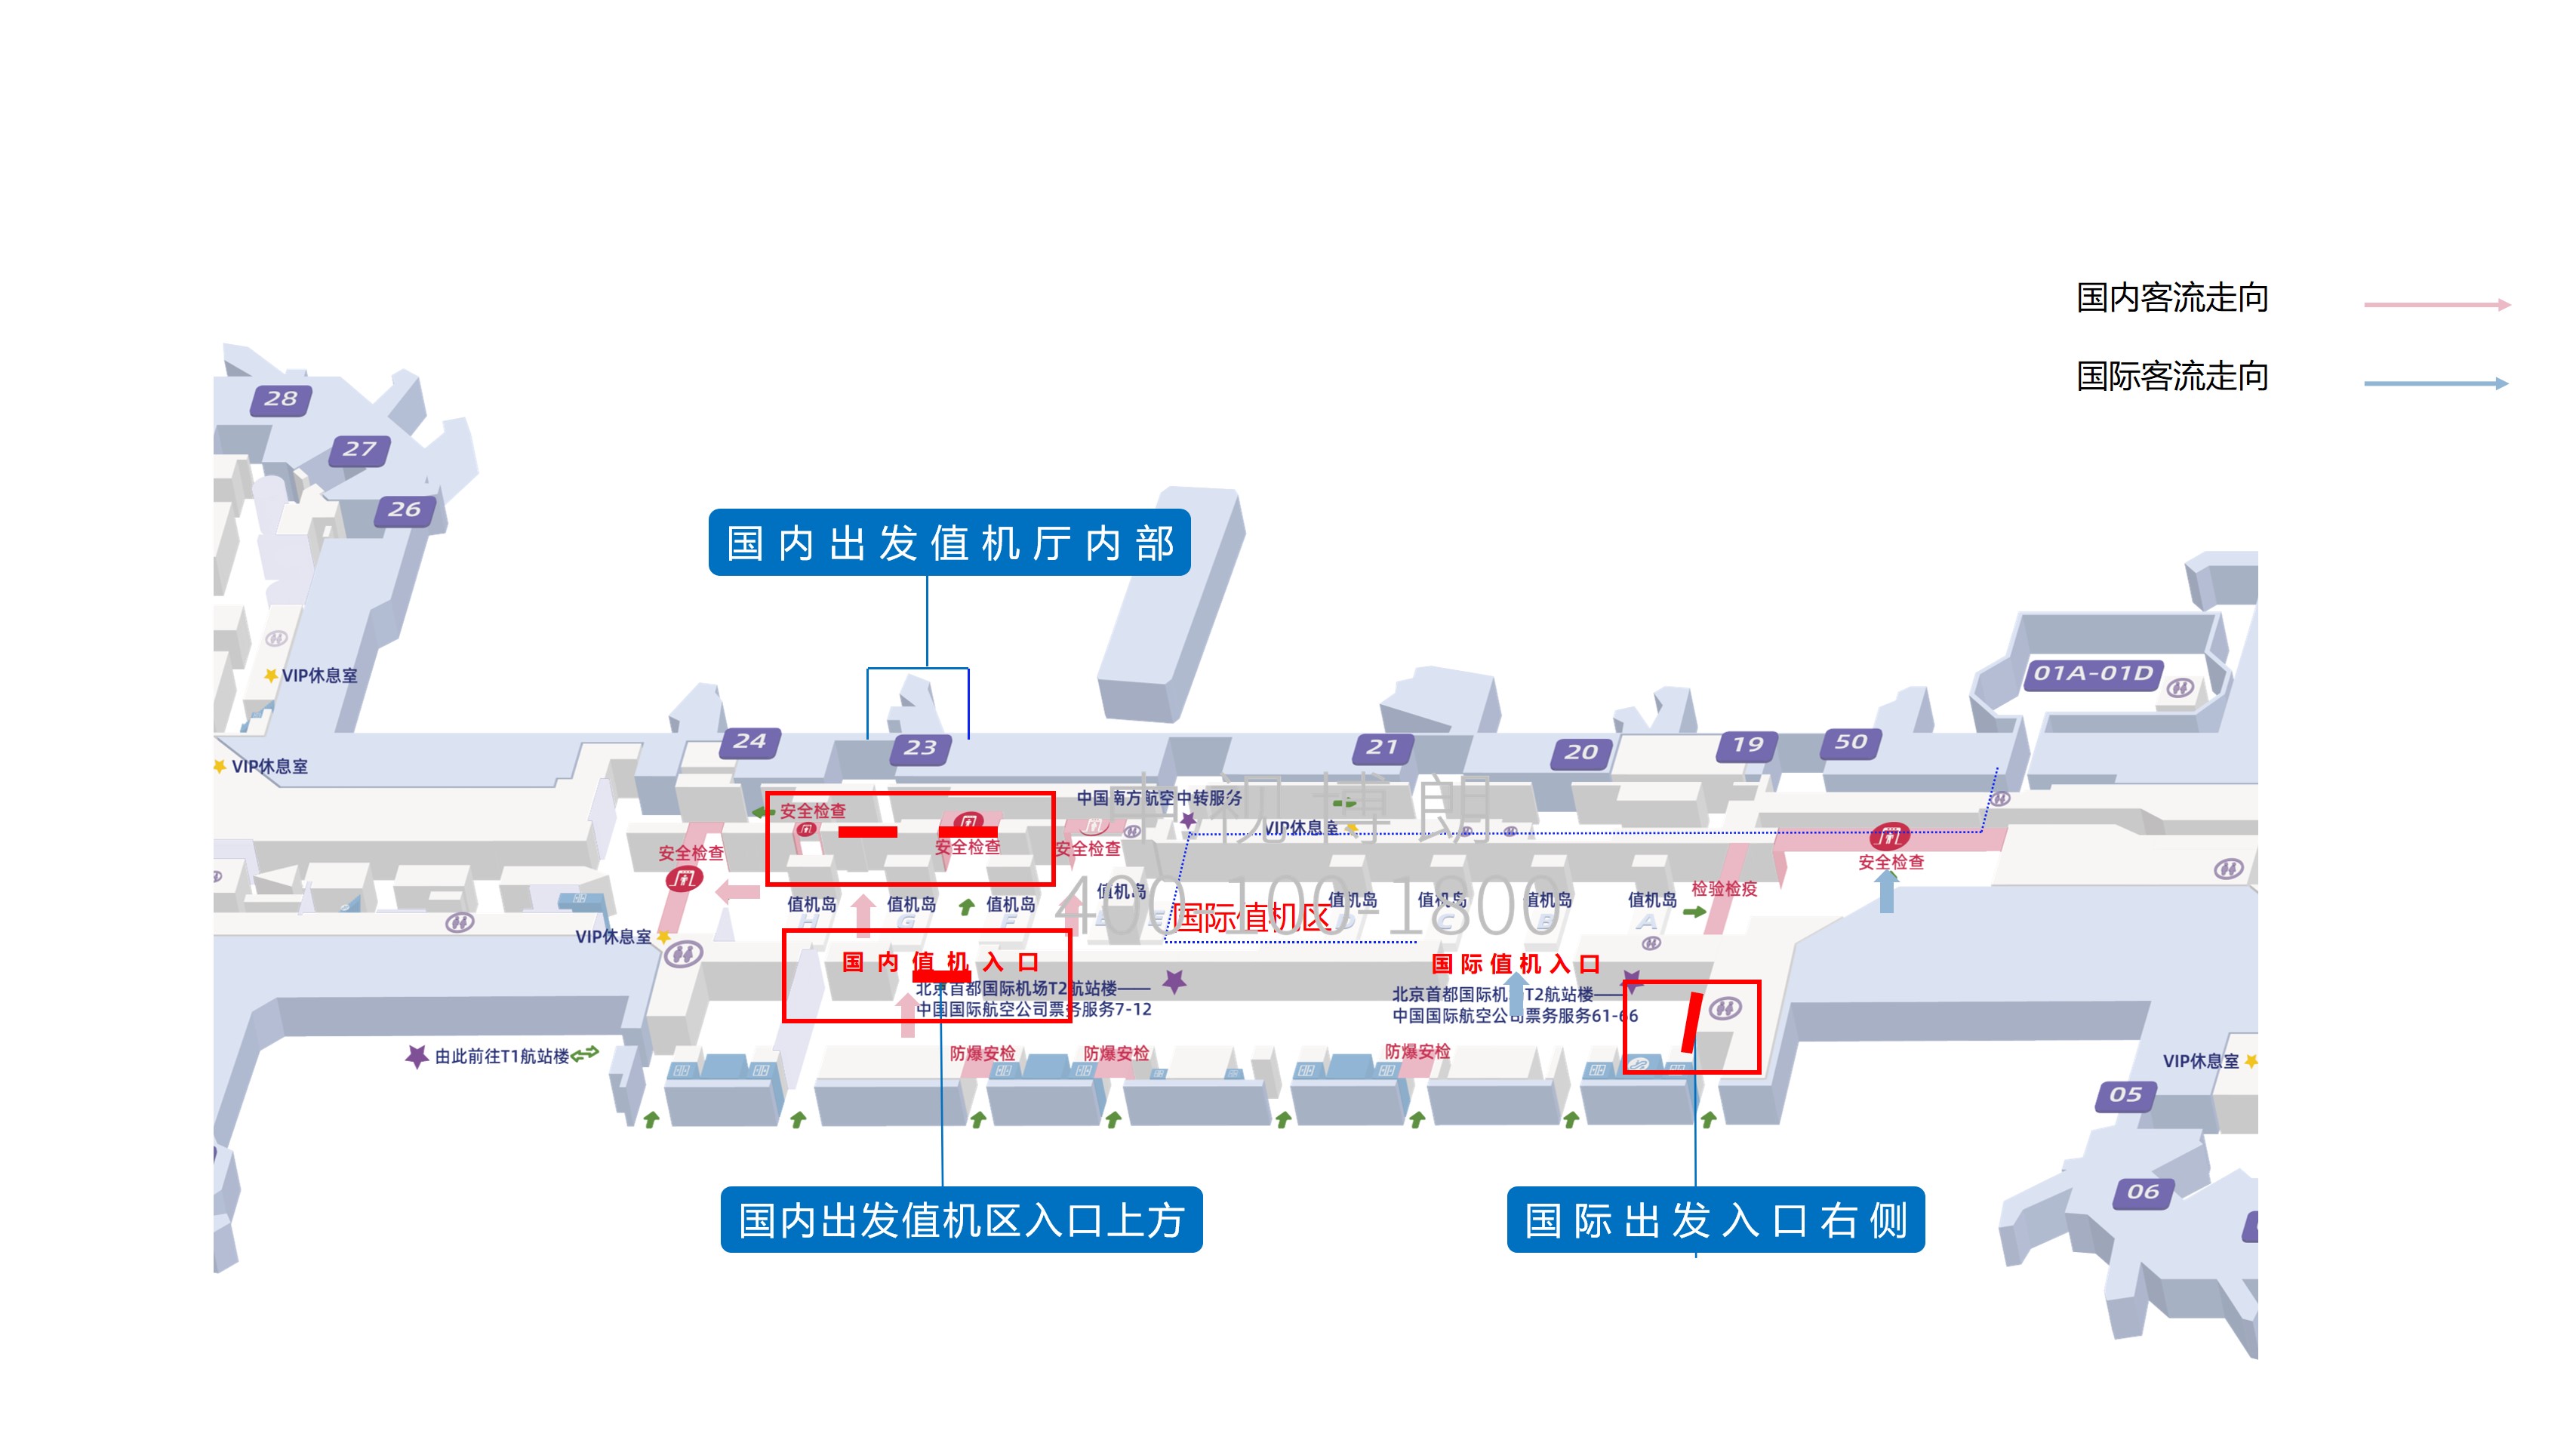 北京首都机场广告-T2出发全覆盖4台LED屏套装位置图